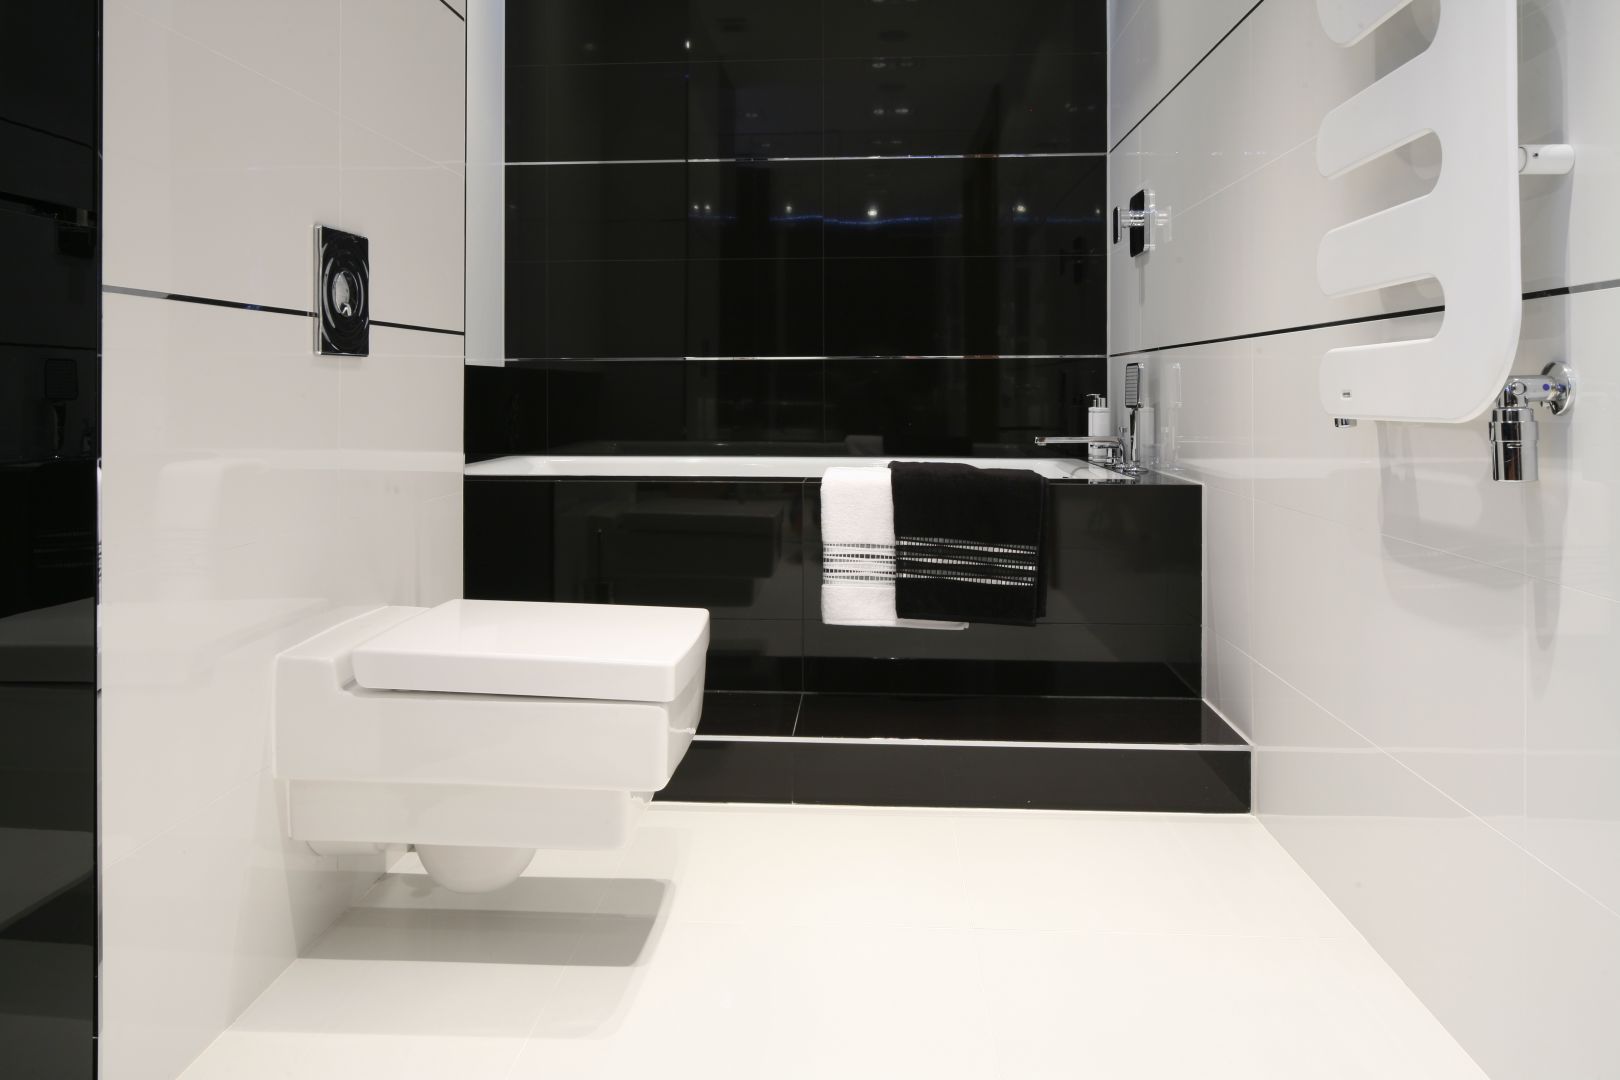 Czerń i biel to doskonały pomysł na modną, ale też stylową łazienkę. Jeśli wnętrze jest niewielkie, lepiej zastosować większą ilość białego koloru. Projekt: Anna Maria Sokołowska. Fot. Bartosz Jarosz